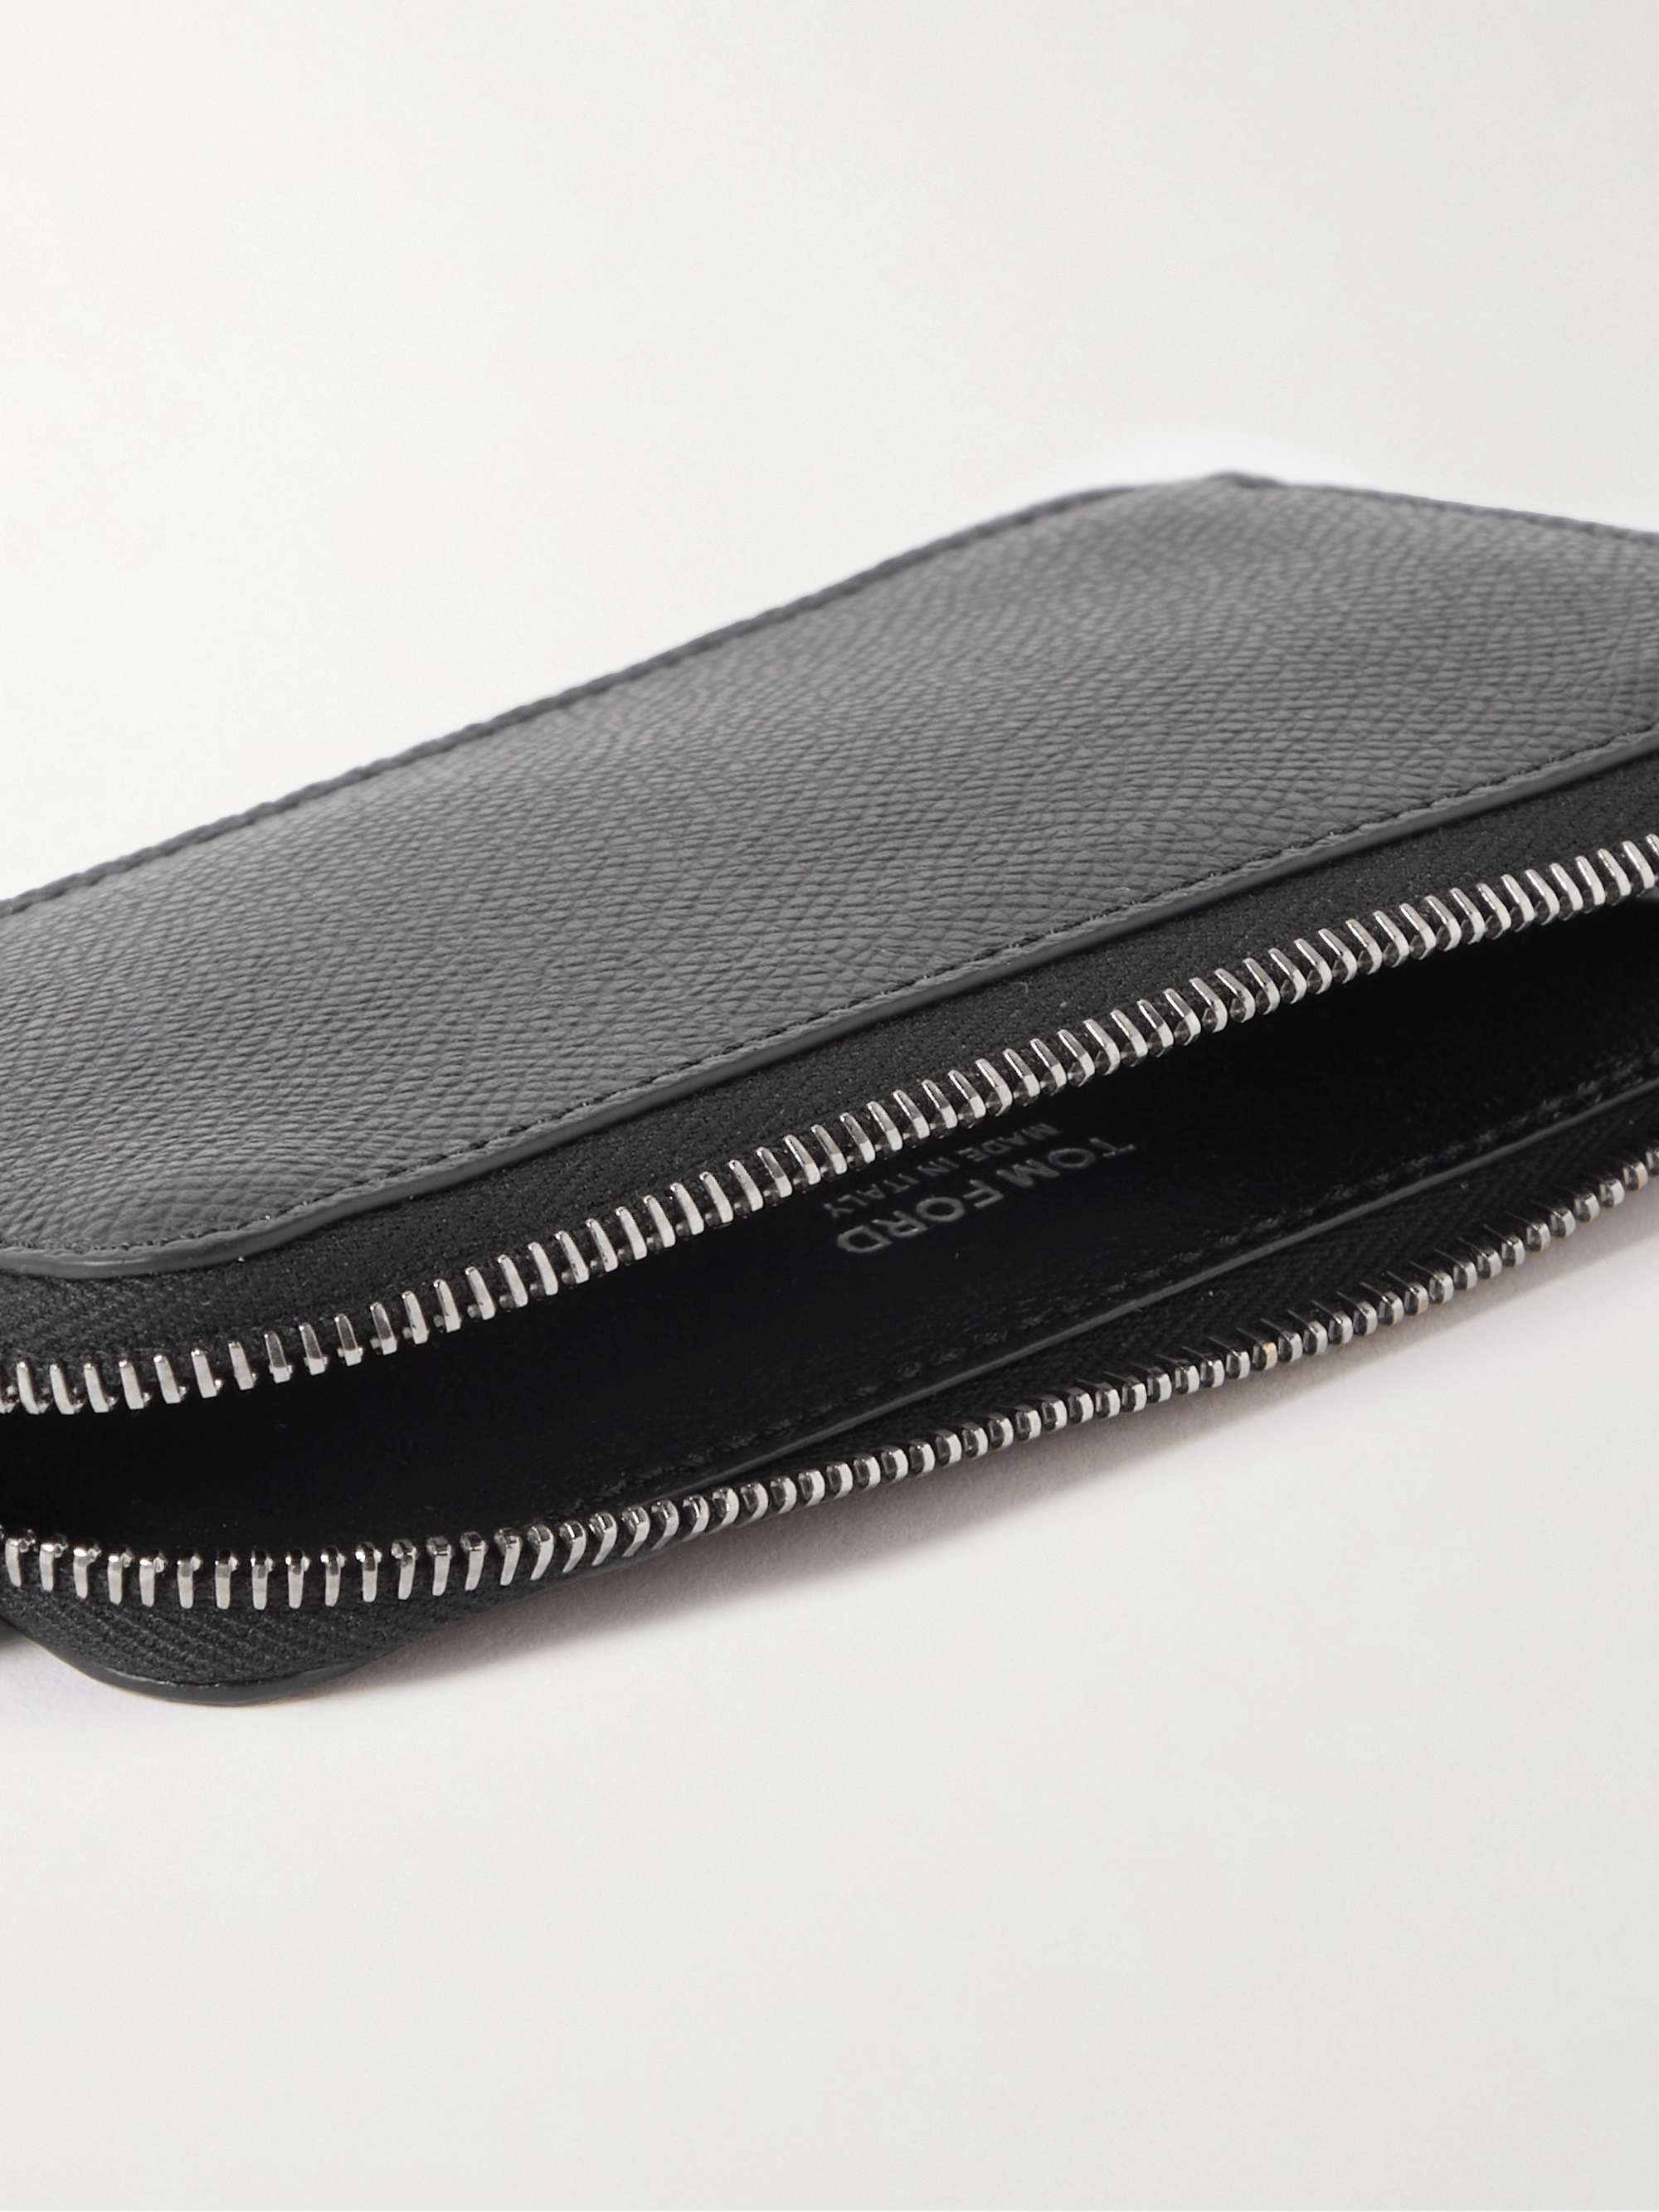 Slim Zip Travel Wallet | Full grain leather Black Onyx